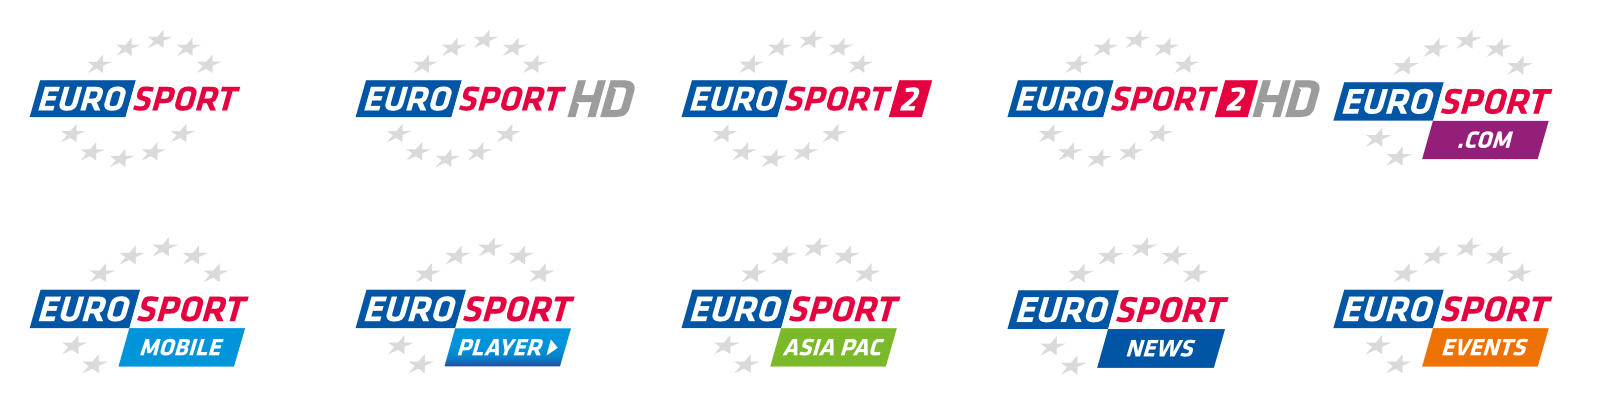 Канал евроспорт на неделю. Евроспорт логотип. Канал Евроспорт. Телеканал Евроспорт логотип. Телеканал Eurosport HD.